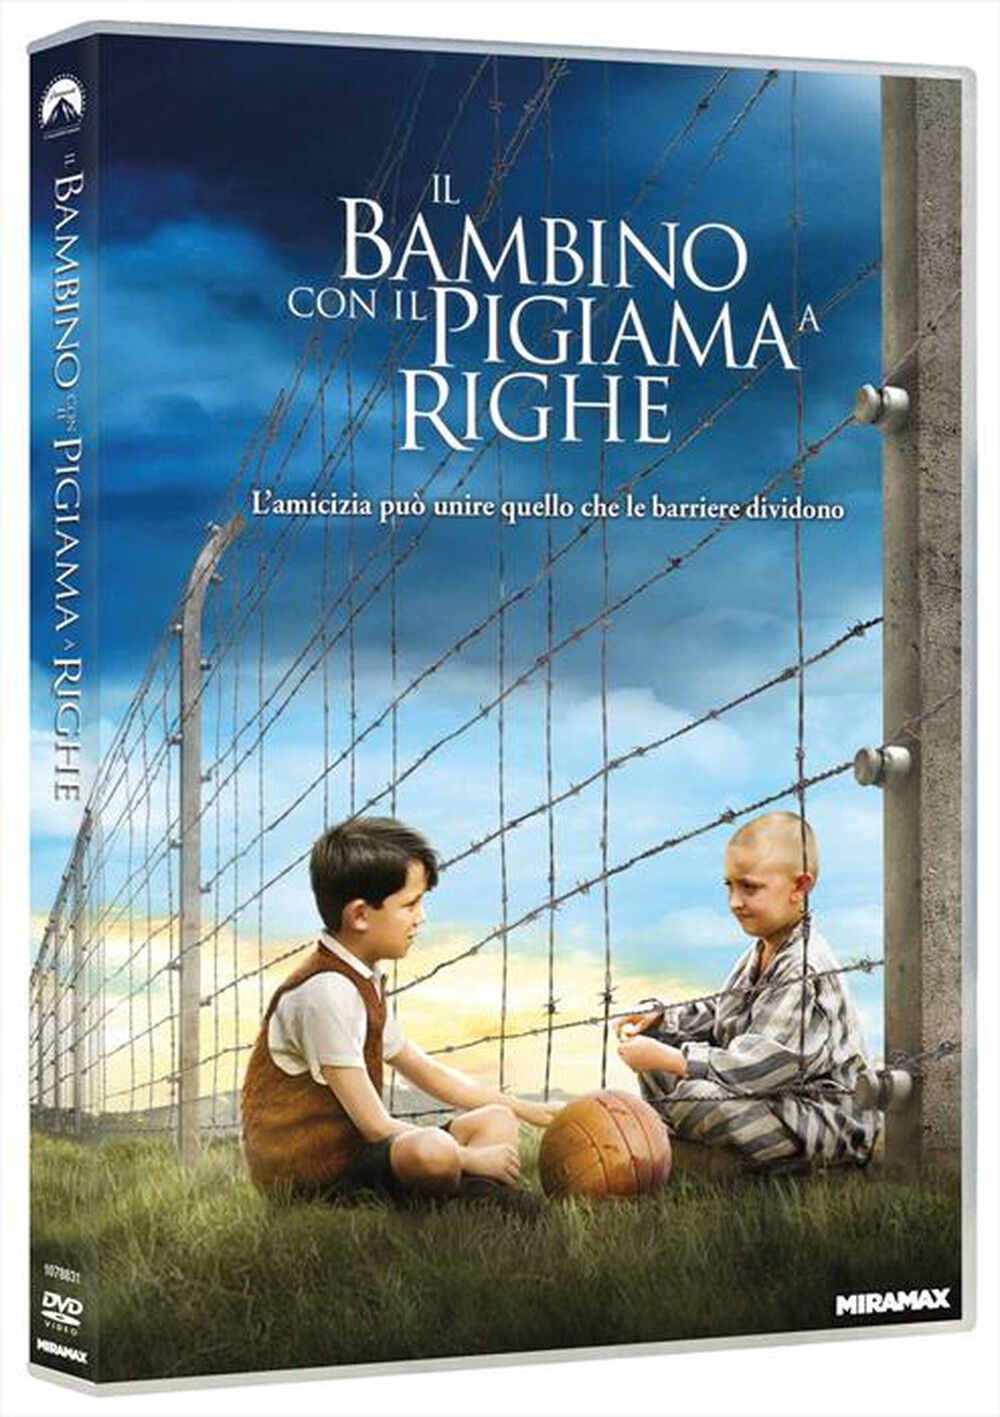 "Paramount Pictures - Bambino Con Il Pigiama A Righe (Il) - "